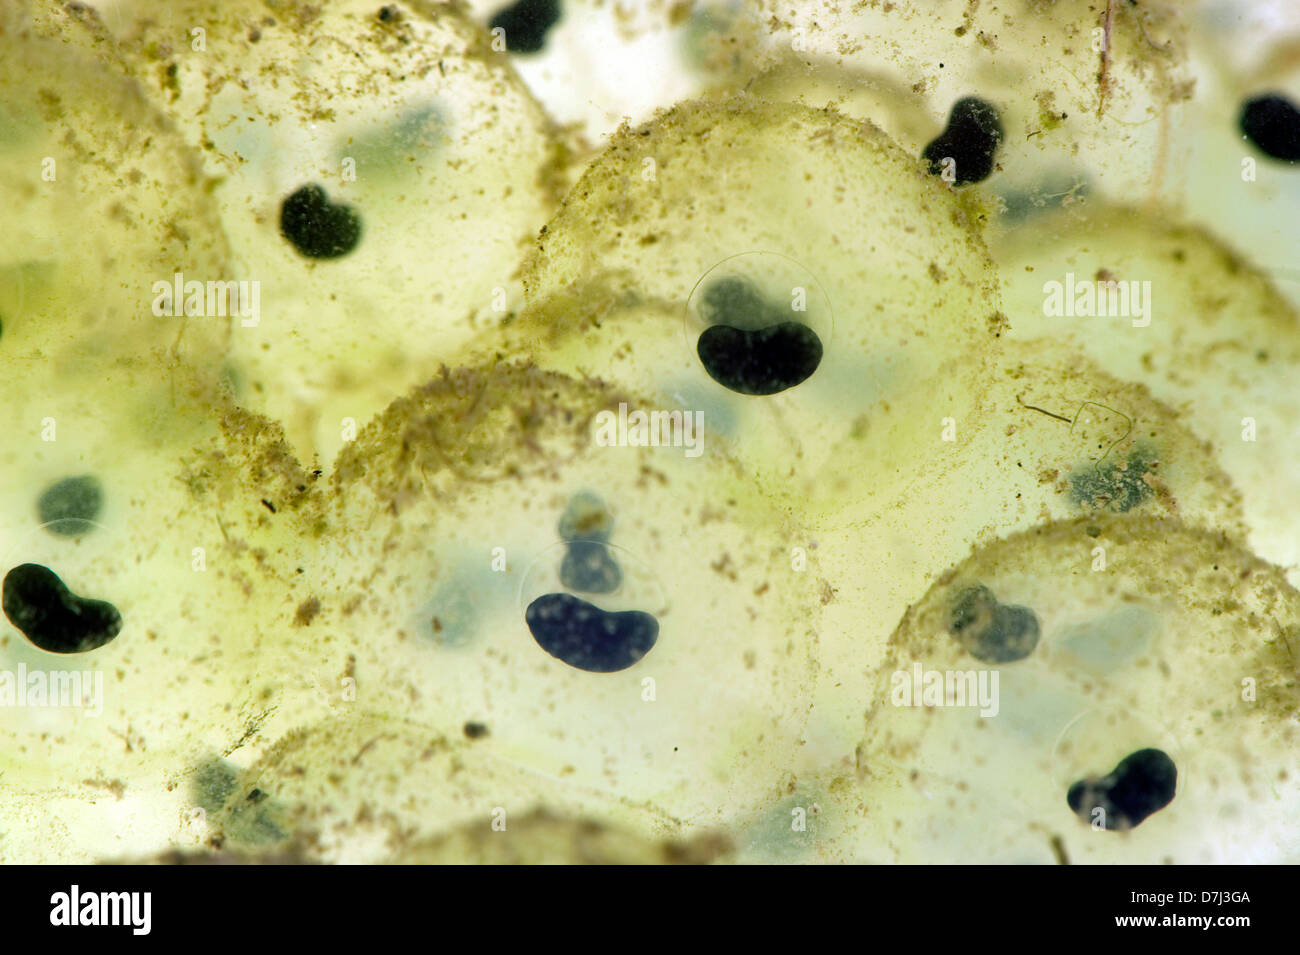 Frog spawn di una rana europea, Rana temporaria, con lo sviluppo di embrioni Foto Stock